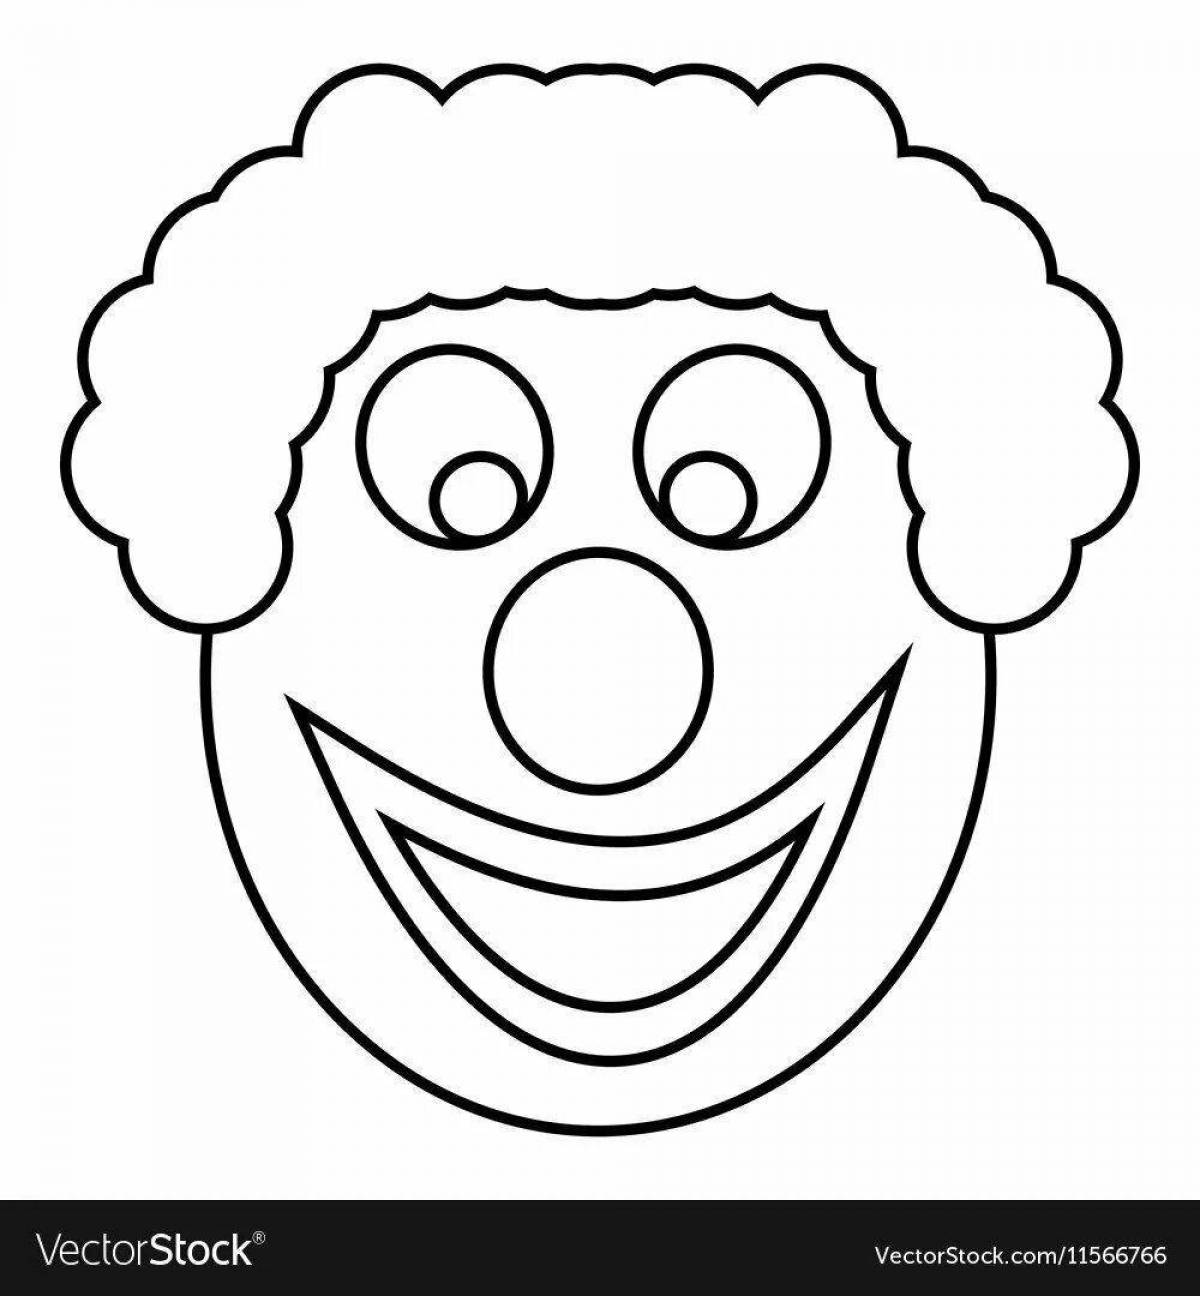 Причудливая раскраска лица клоуна для детей